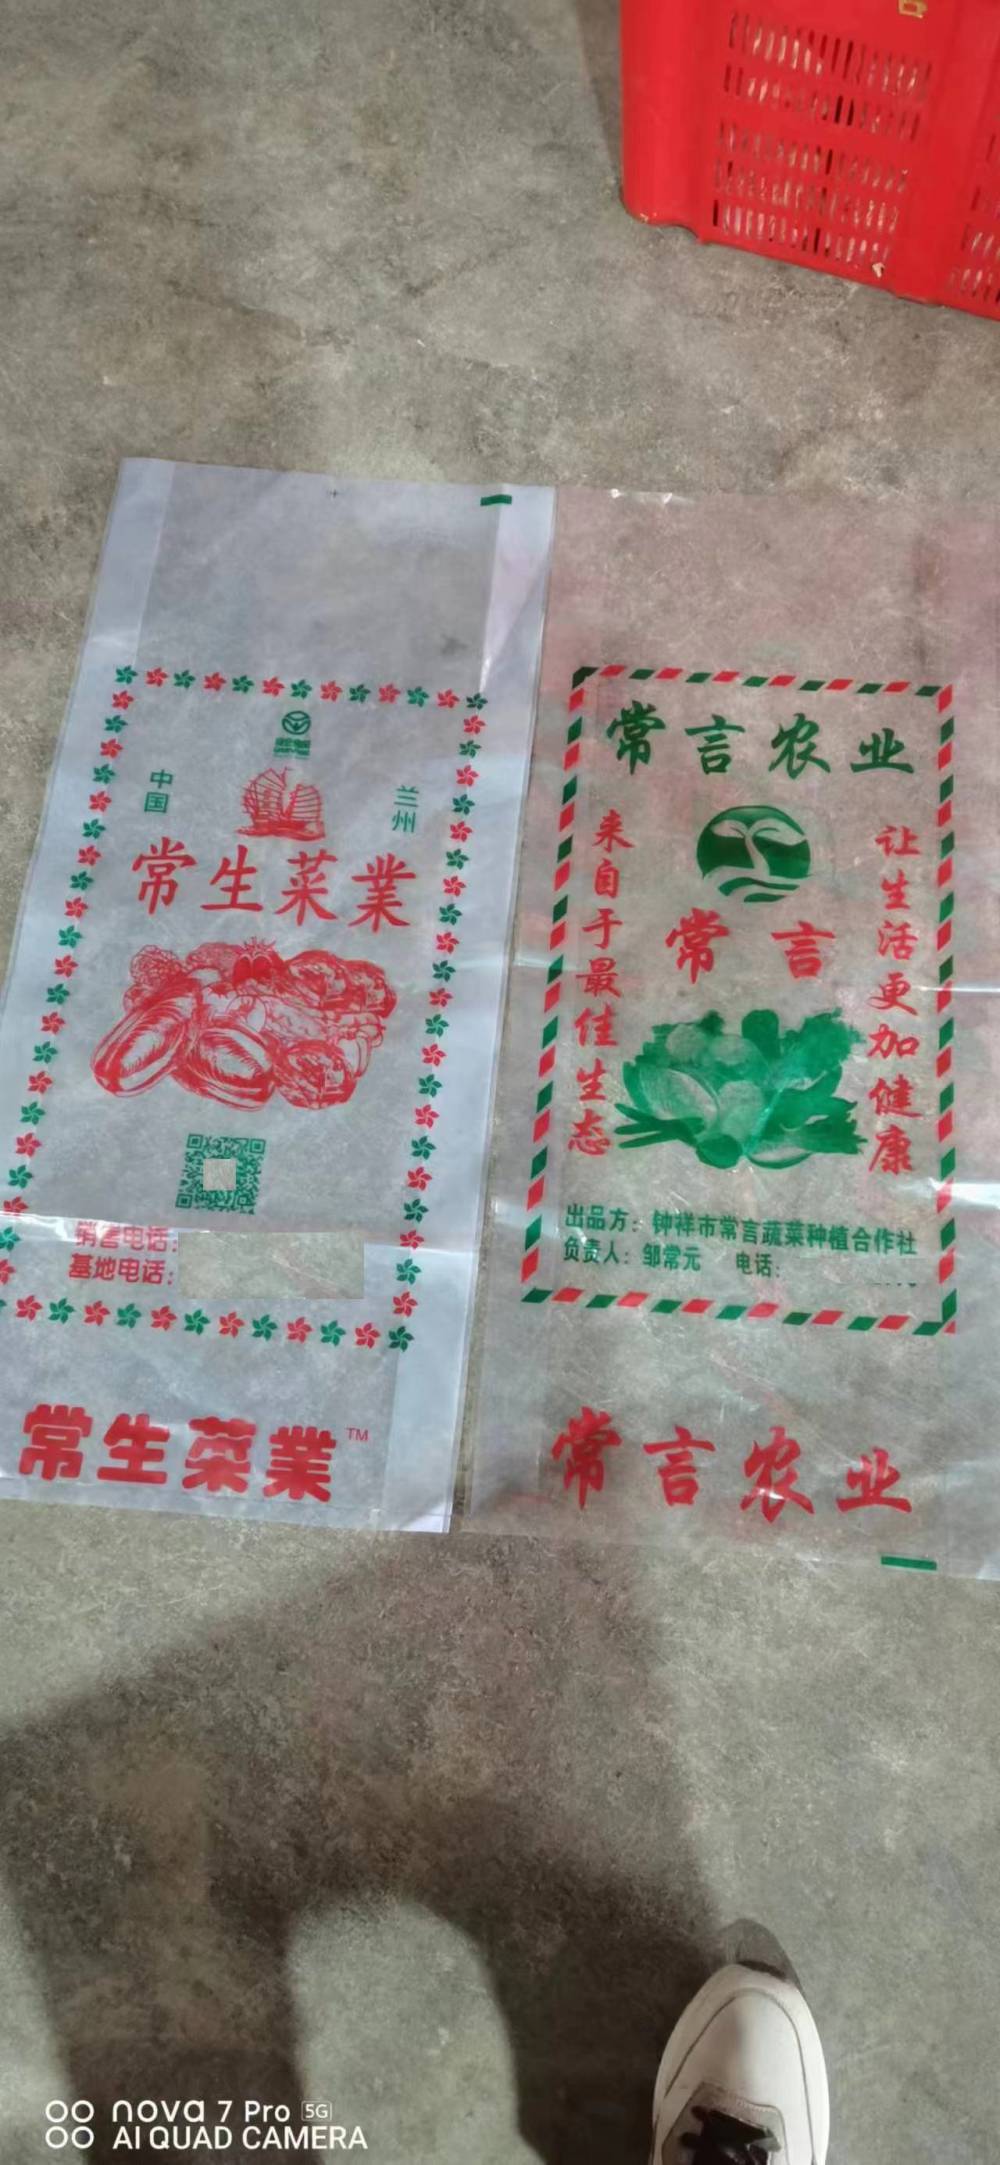 厂家批发PE加厚保鲜袋娃娃菜包装袋水果蔬菜包装袋